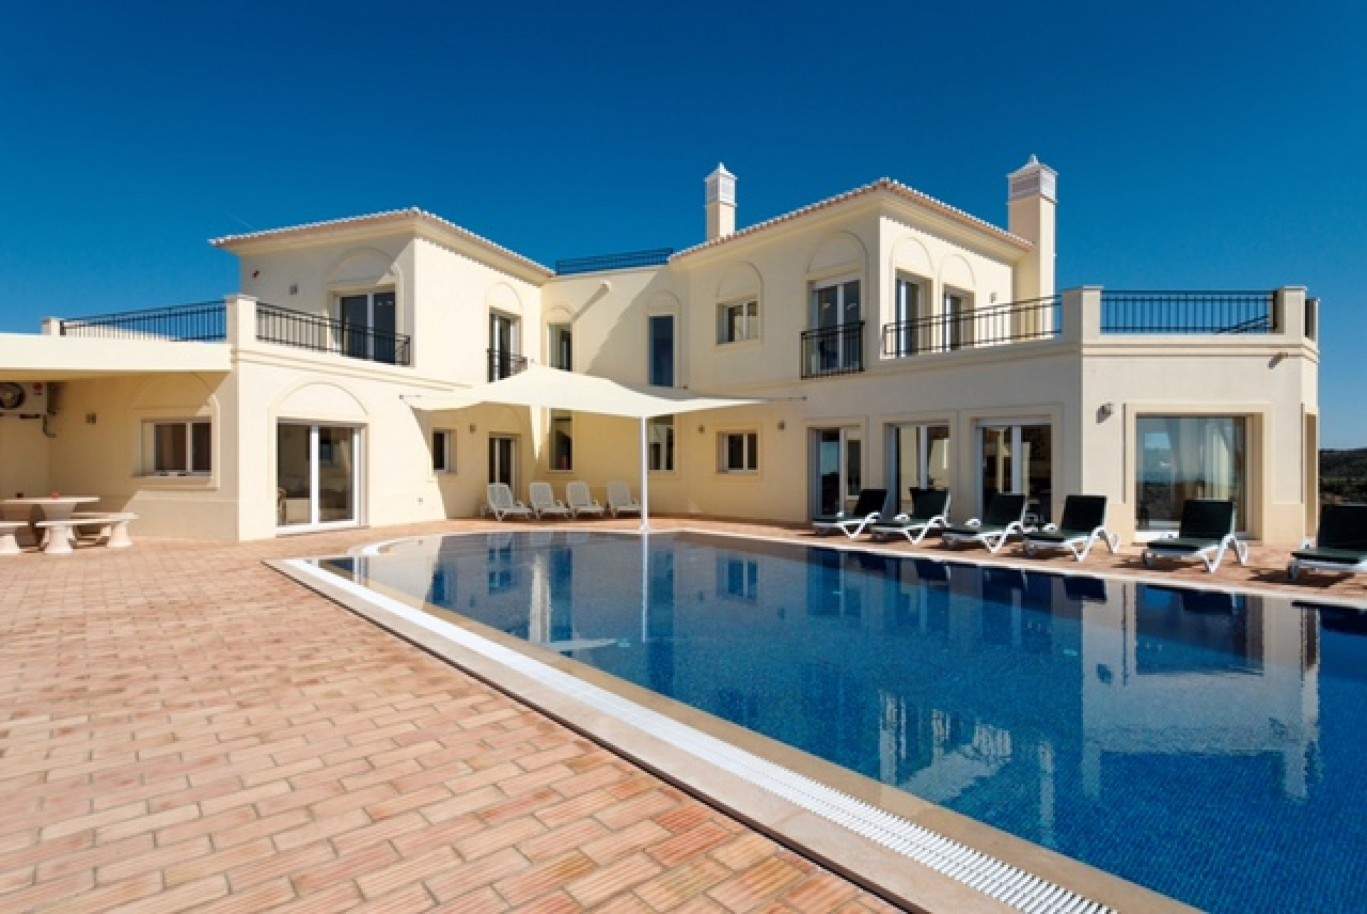 4 Bedroom Villa with swimming pool, for sale in Tavira, Algarve_201279